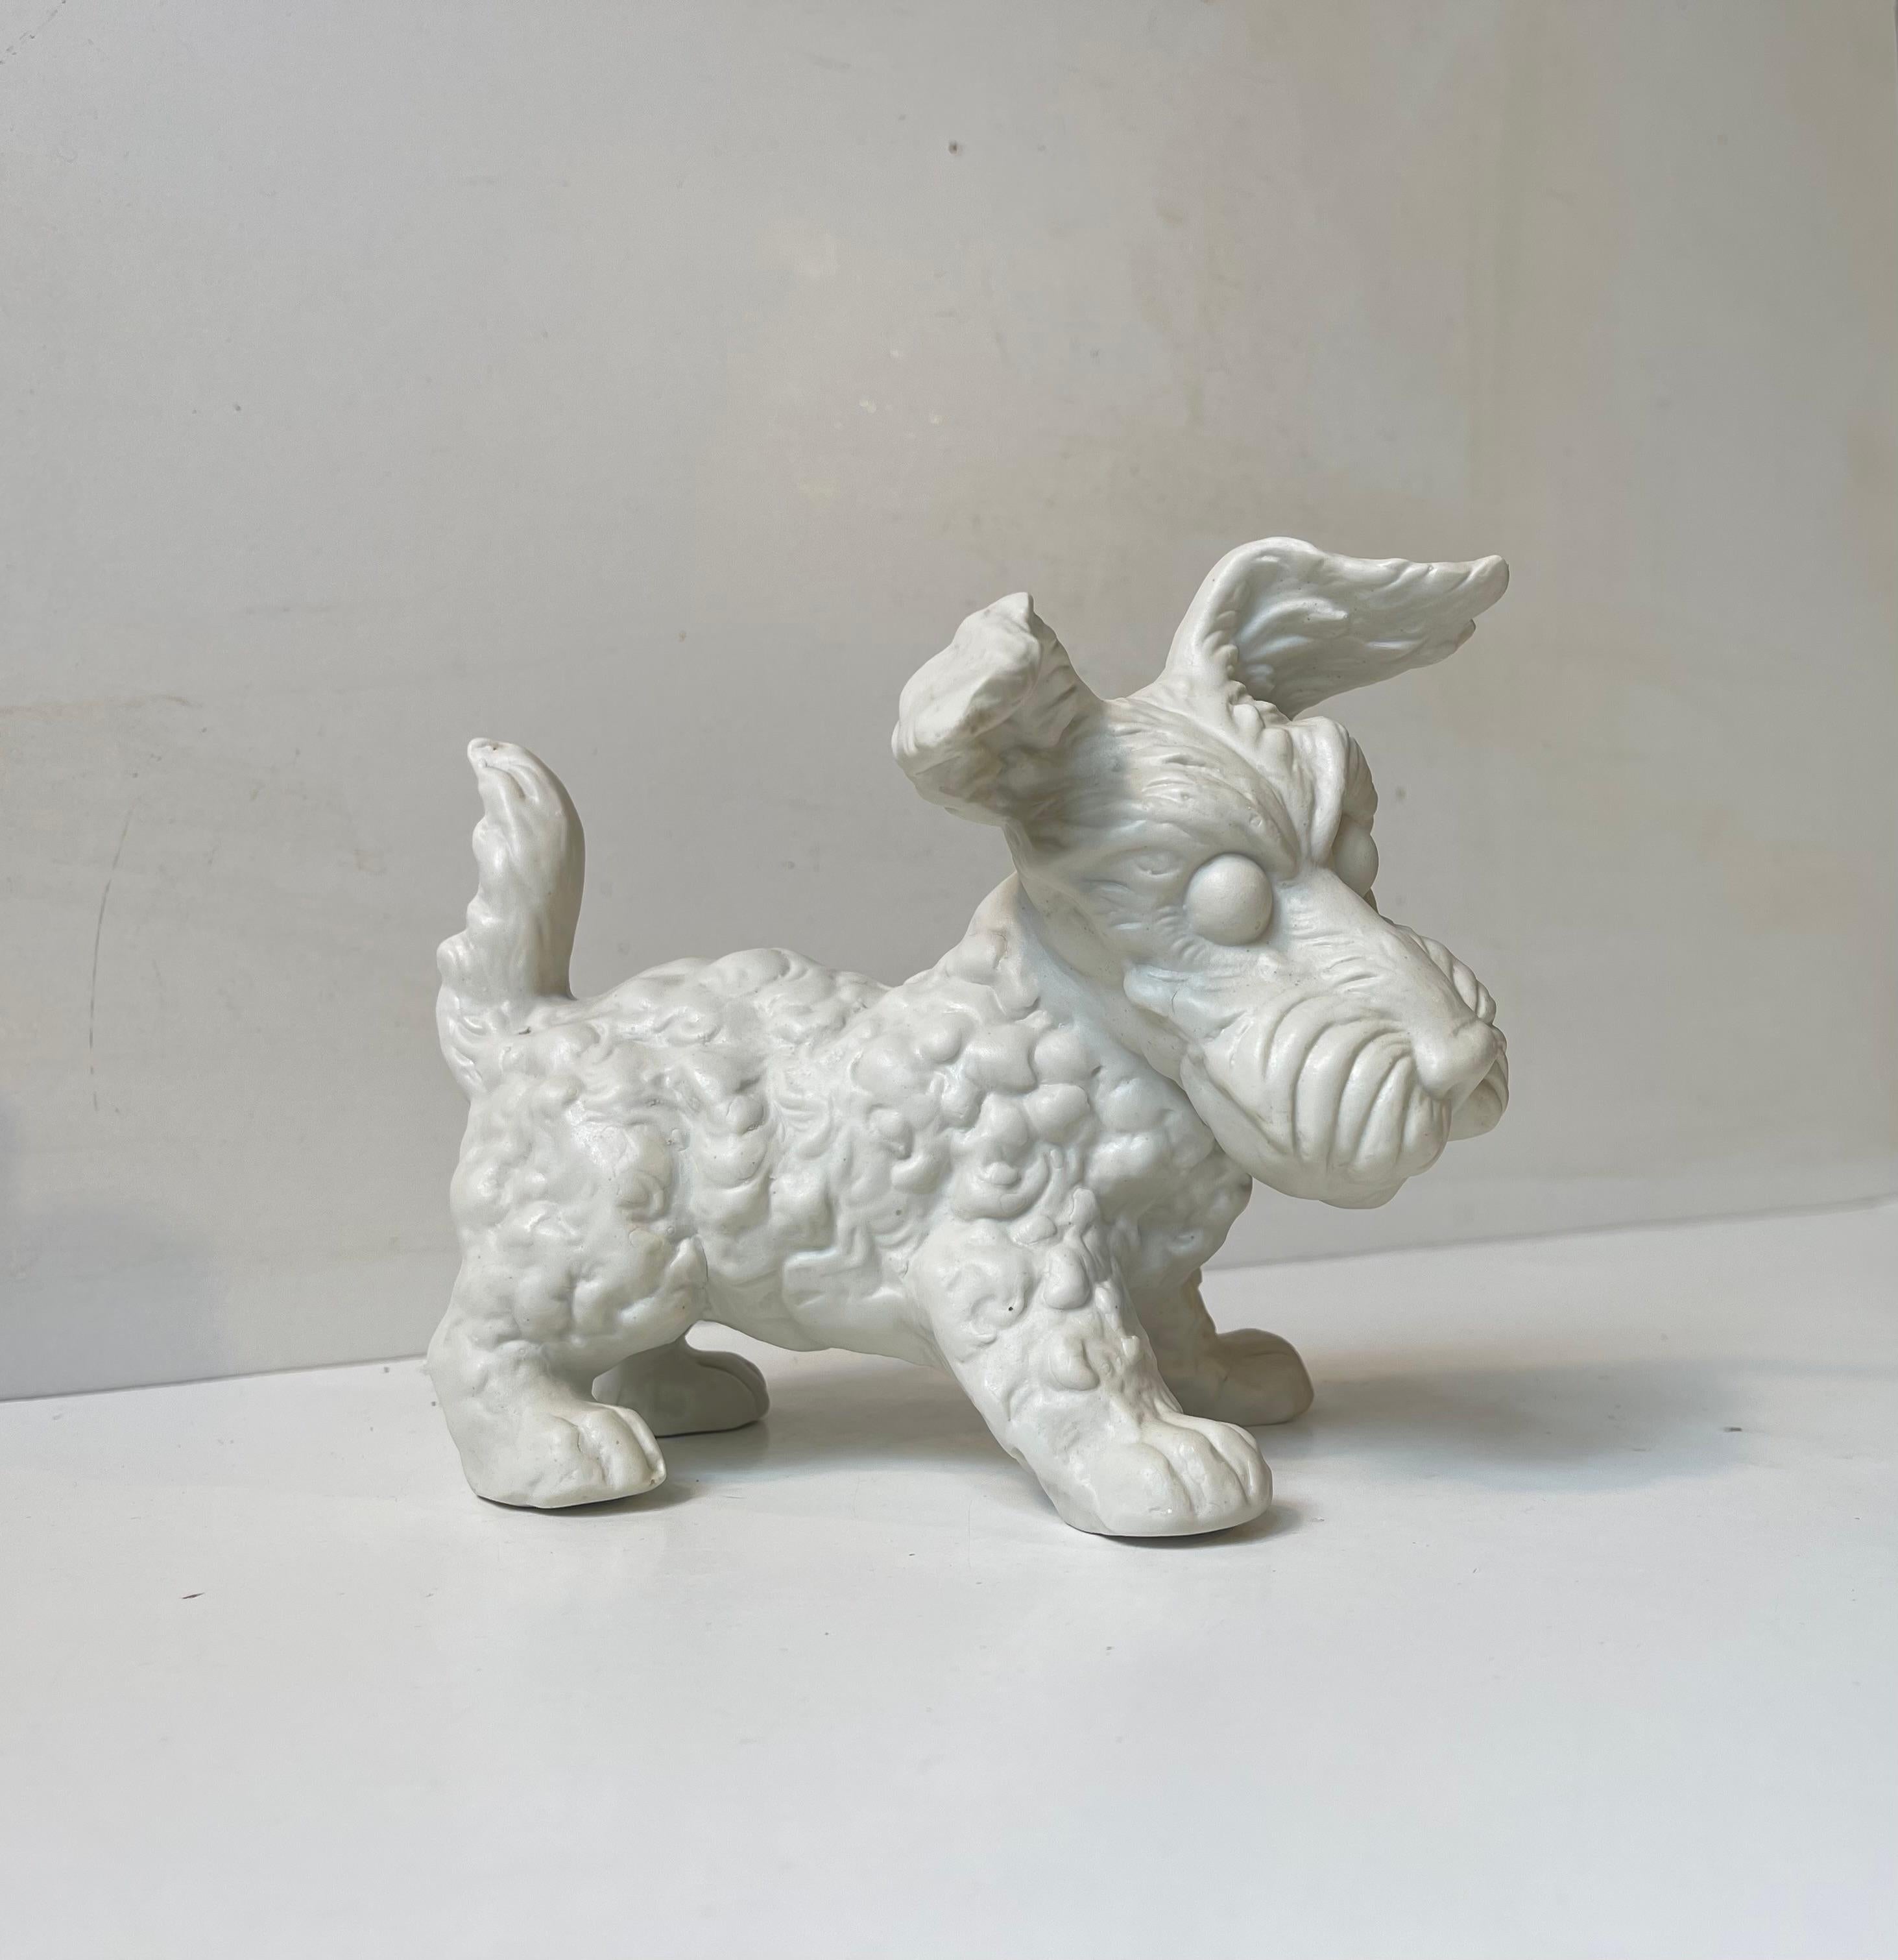 Lebensechte Figur eines weißen Scottish Terriers/Aberdeen Terriers. Sie ist aus weißem Biskuitporzellan gefertigt und gegossen. Dies ist das große Format von Schaubach Kunst in Deutschland - ca. 1950-60. Abmessungen: 17x11x14 cm.

Kostenloser